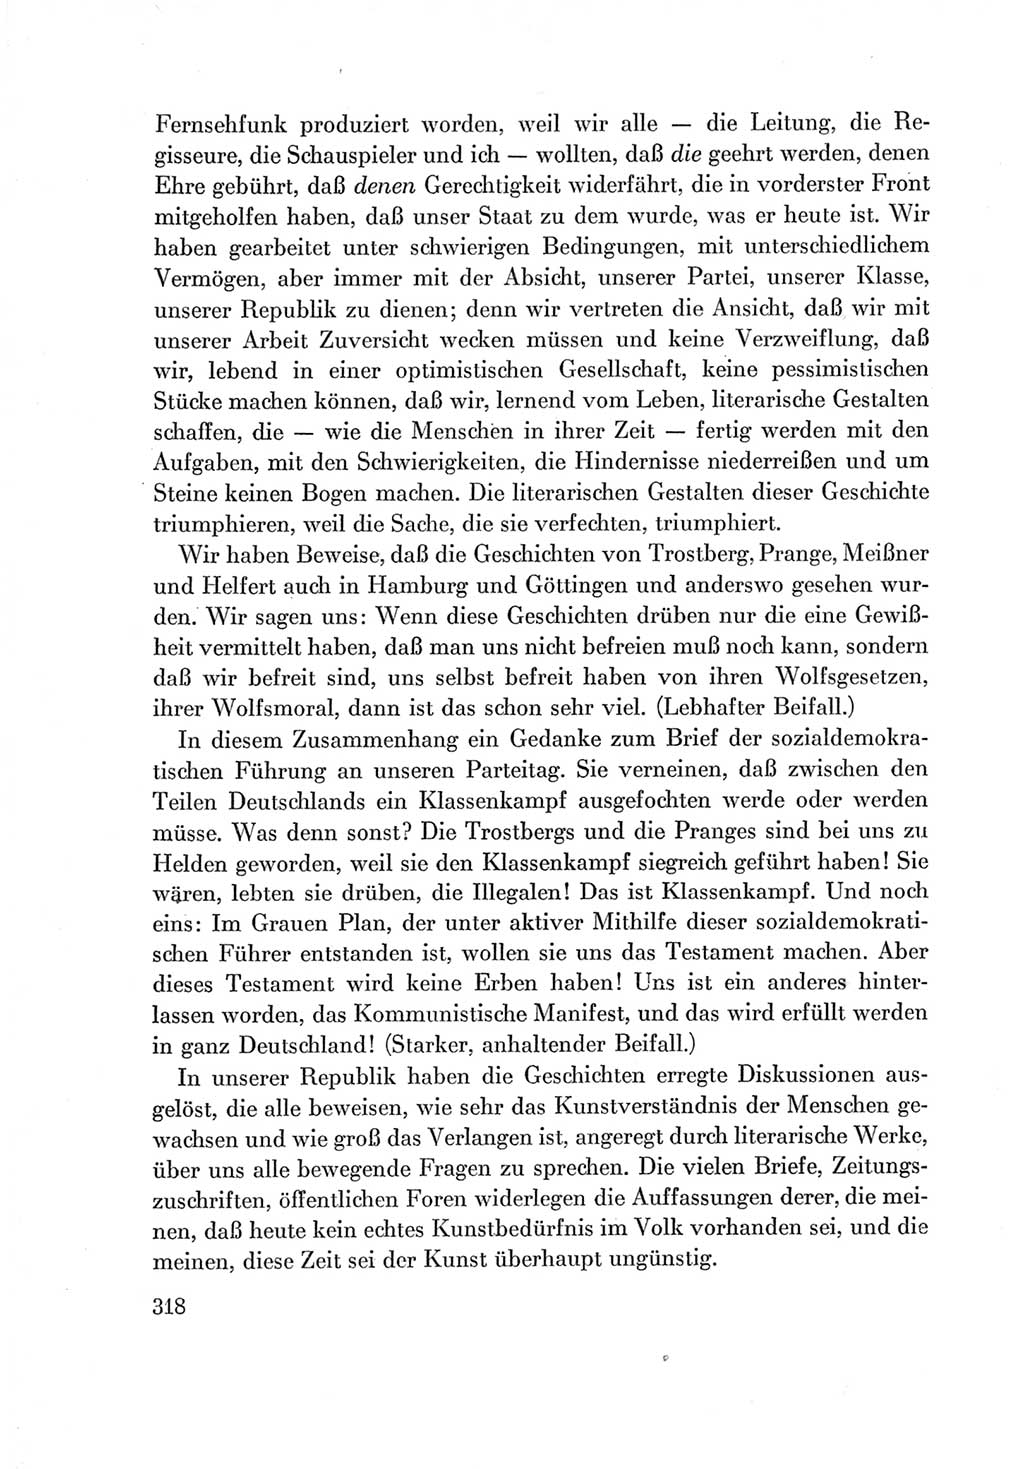 Protokoll der Verhandlungen des Ⅶ. Parteitages der Sozialistischen Einheitspartei Deutschlands (SED) [Deutsche Demokratische Republik (DDR)] 1967, Band Ⅰ, Seite 318 (Prot. Verh. Ⅶ. PT SED DDR 1967, Bd. Ⅰ, S. 318)